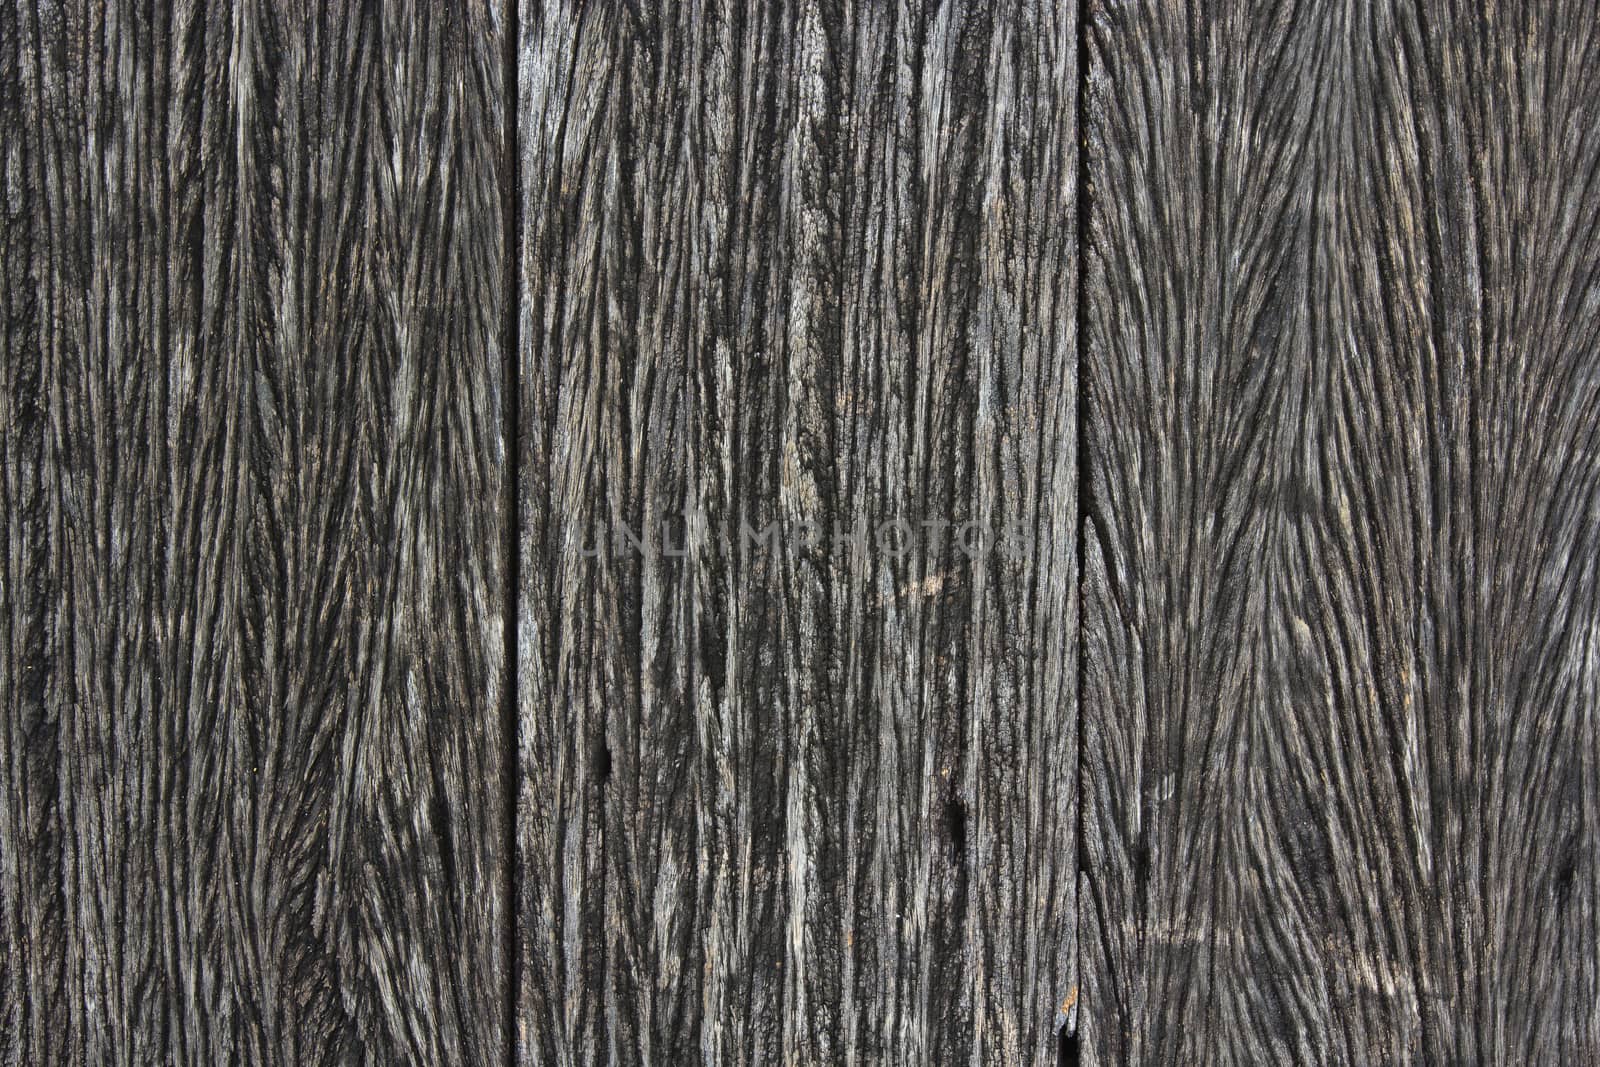 Wood texture by narinbg